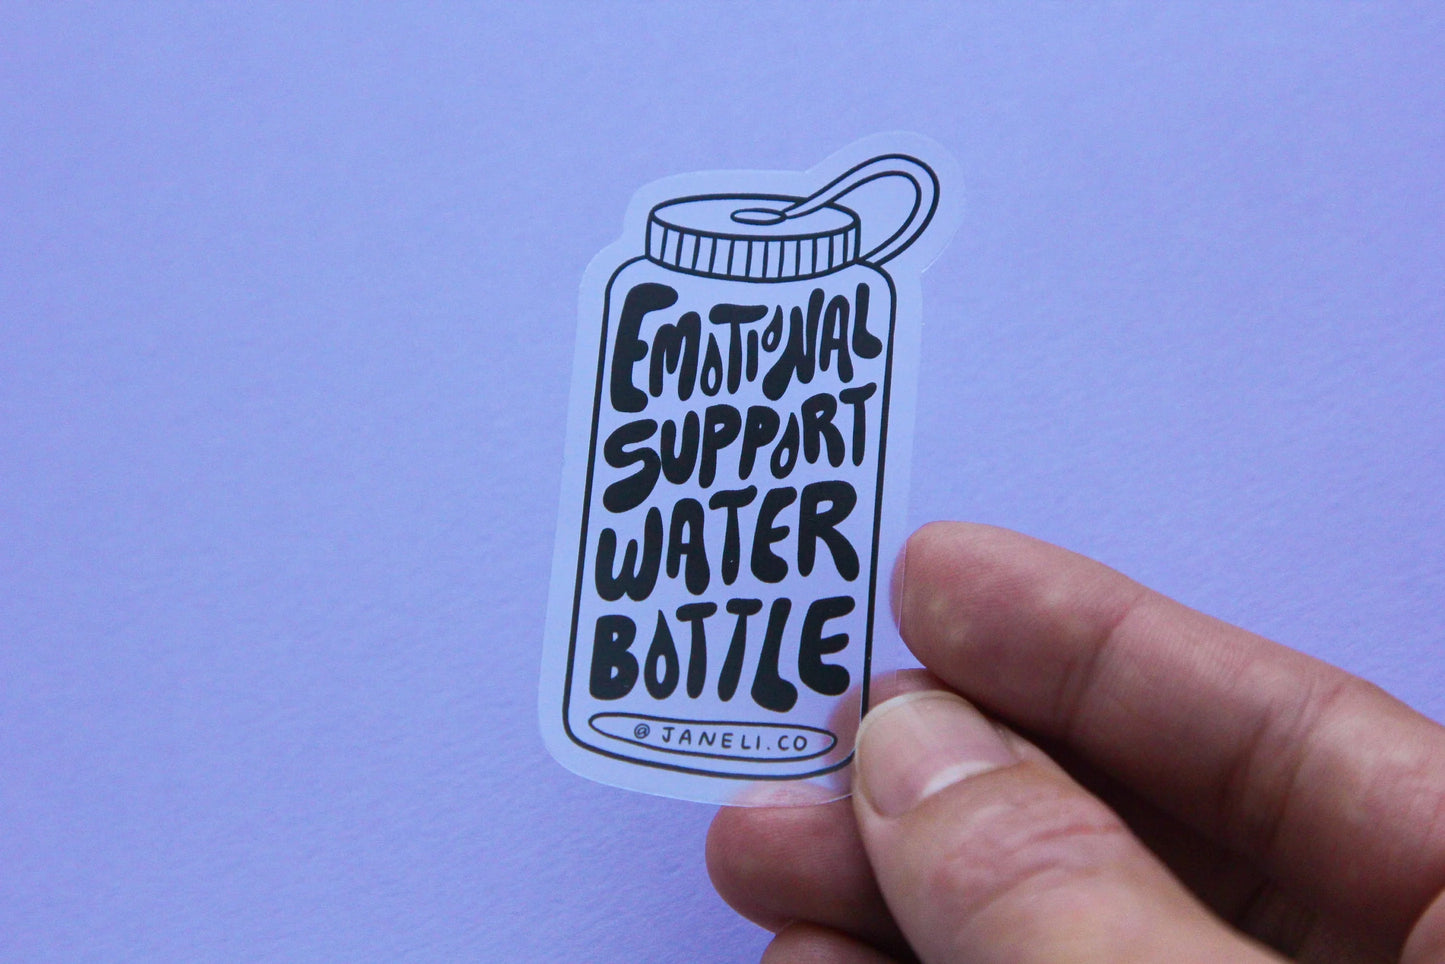 Emotional Support Water Bottle - Clear - Vinyl Sticker - Jane Li Co